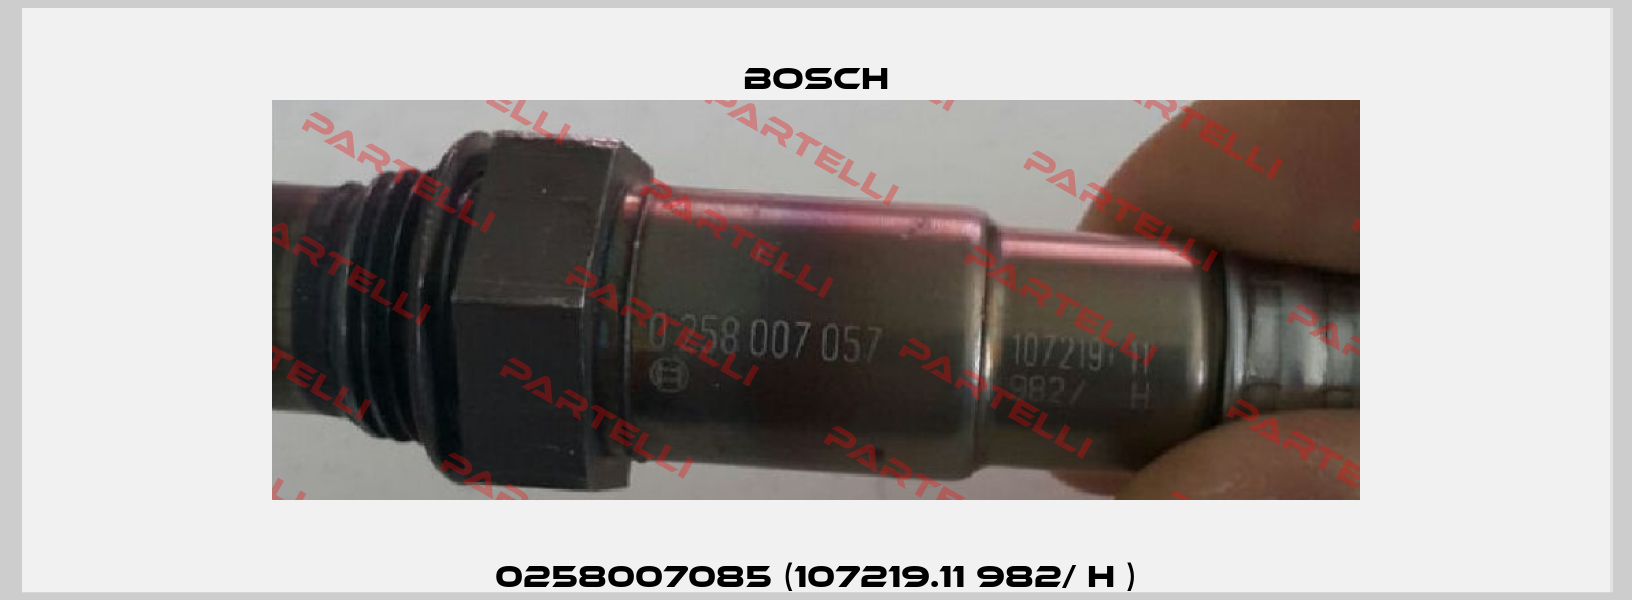 0258007085 (107219.11 982/ H ) Bosch